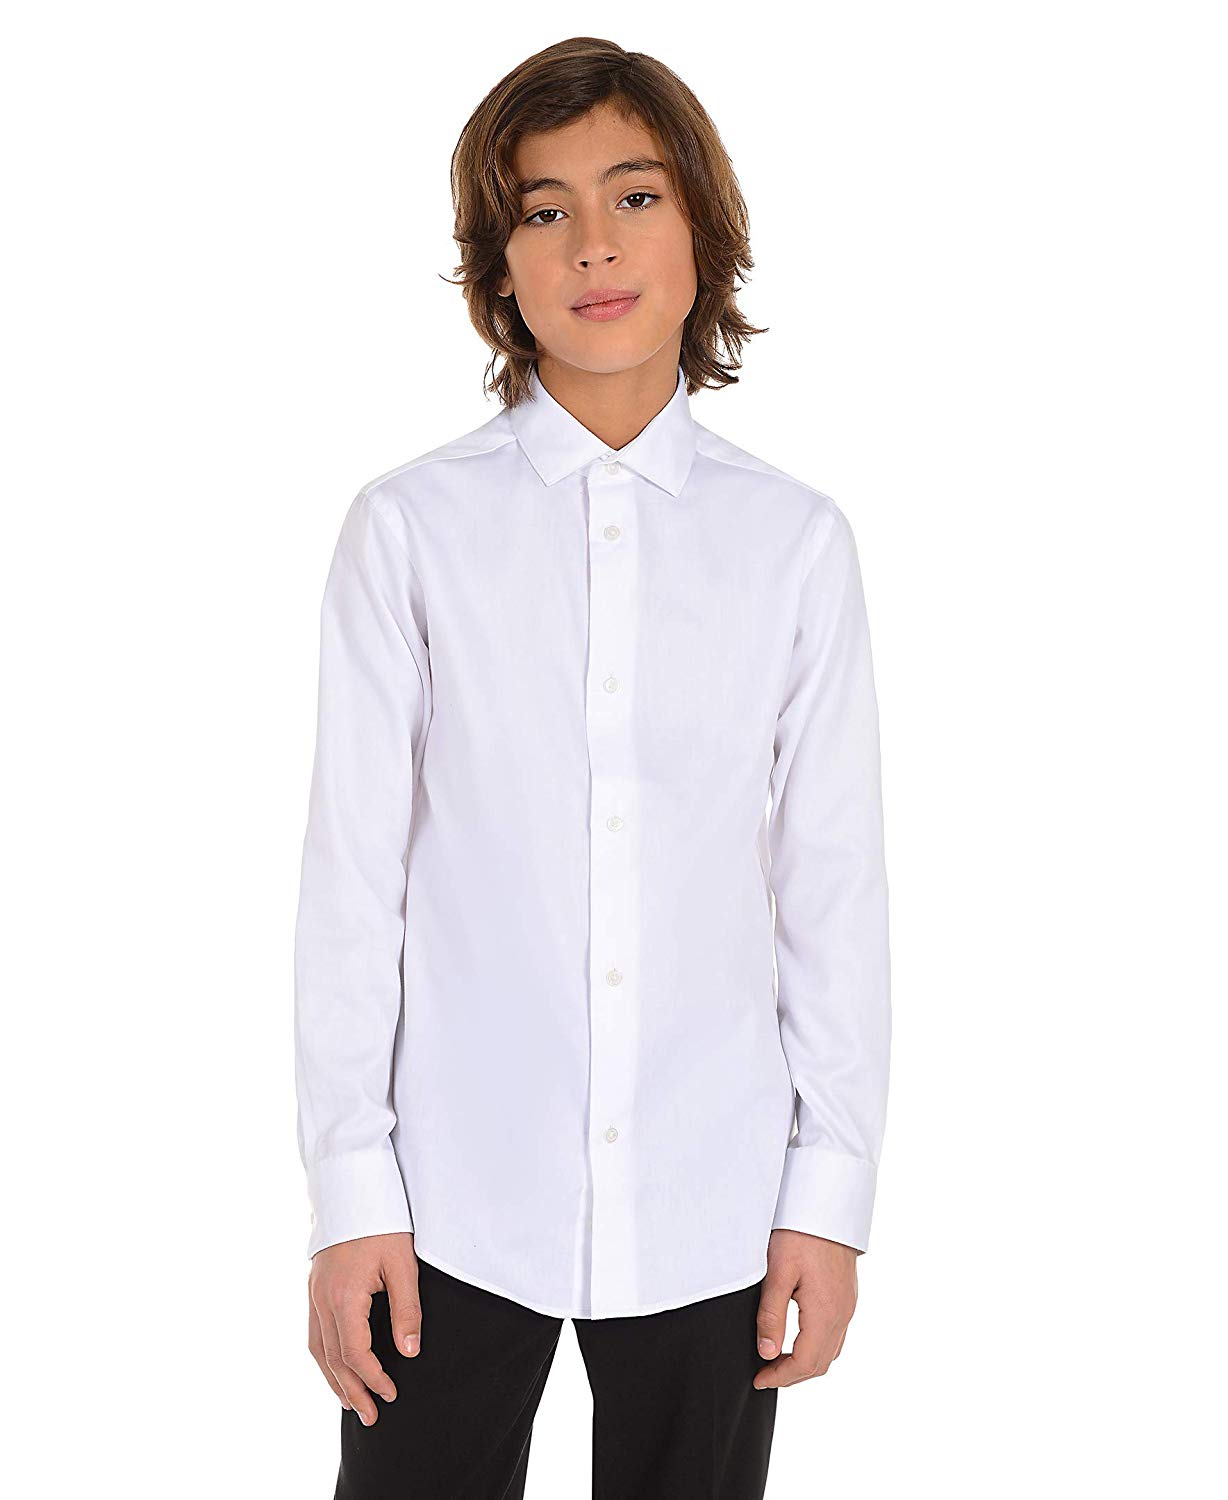 Calvin Klein Boys Little Long Sleeve Sateen Dress Shirt White White